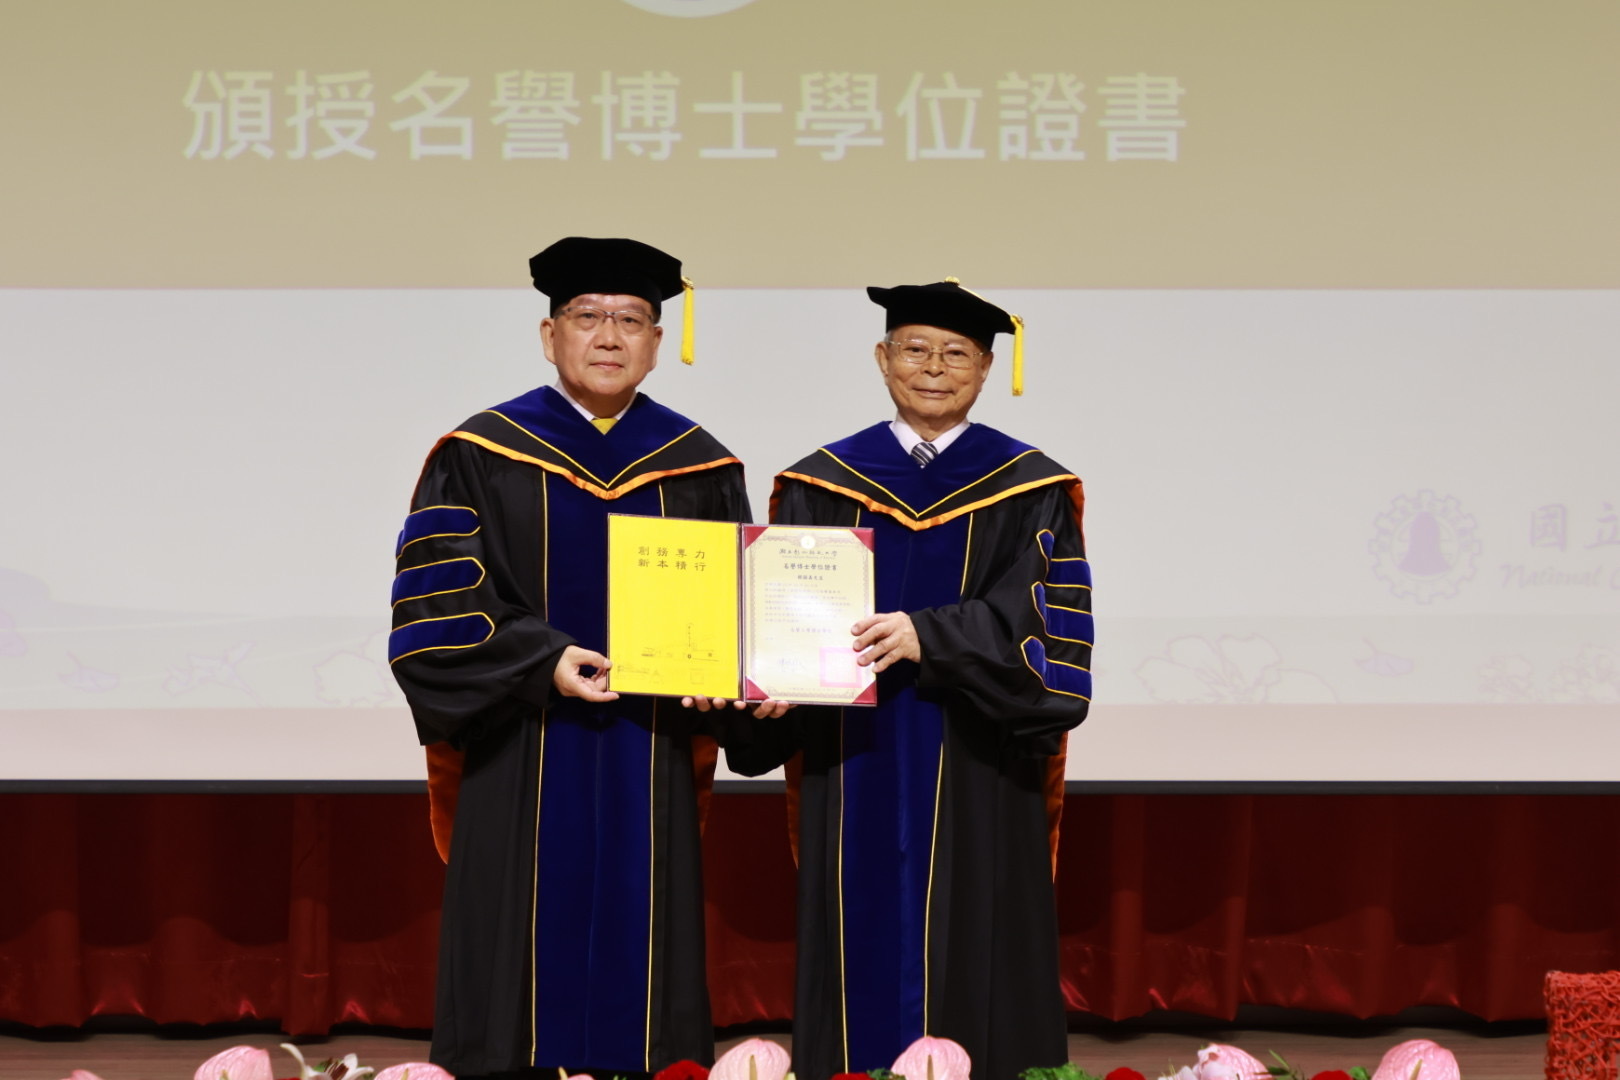 陳明飛校長頒授韓顯壽名譽工學博士學位證書。